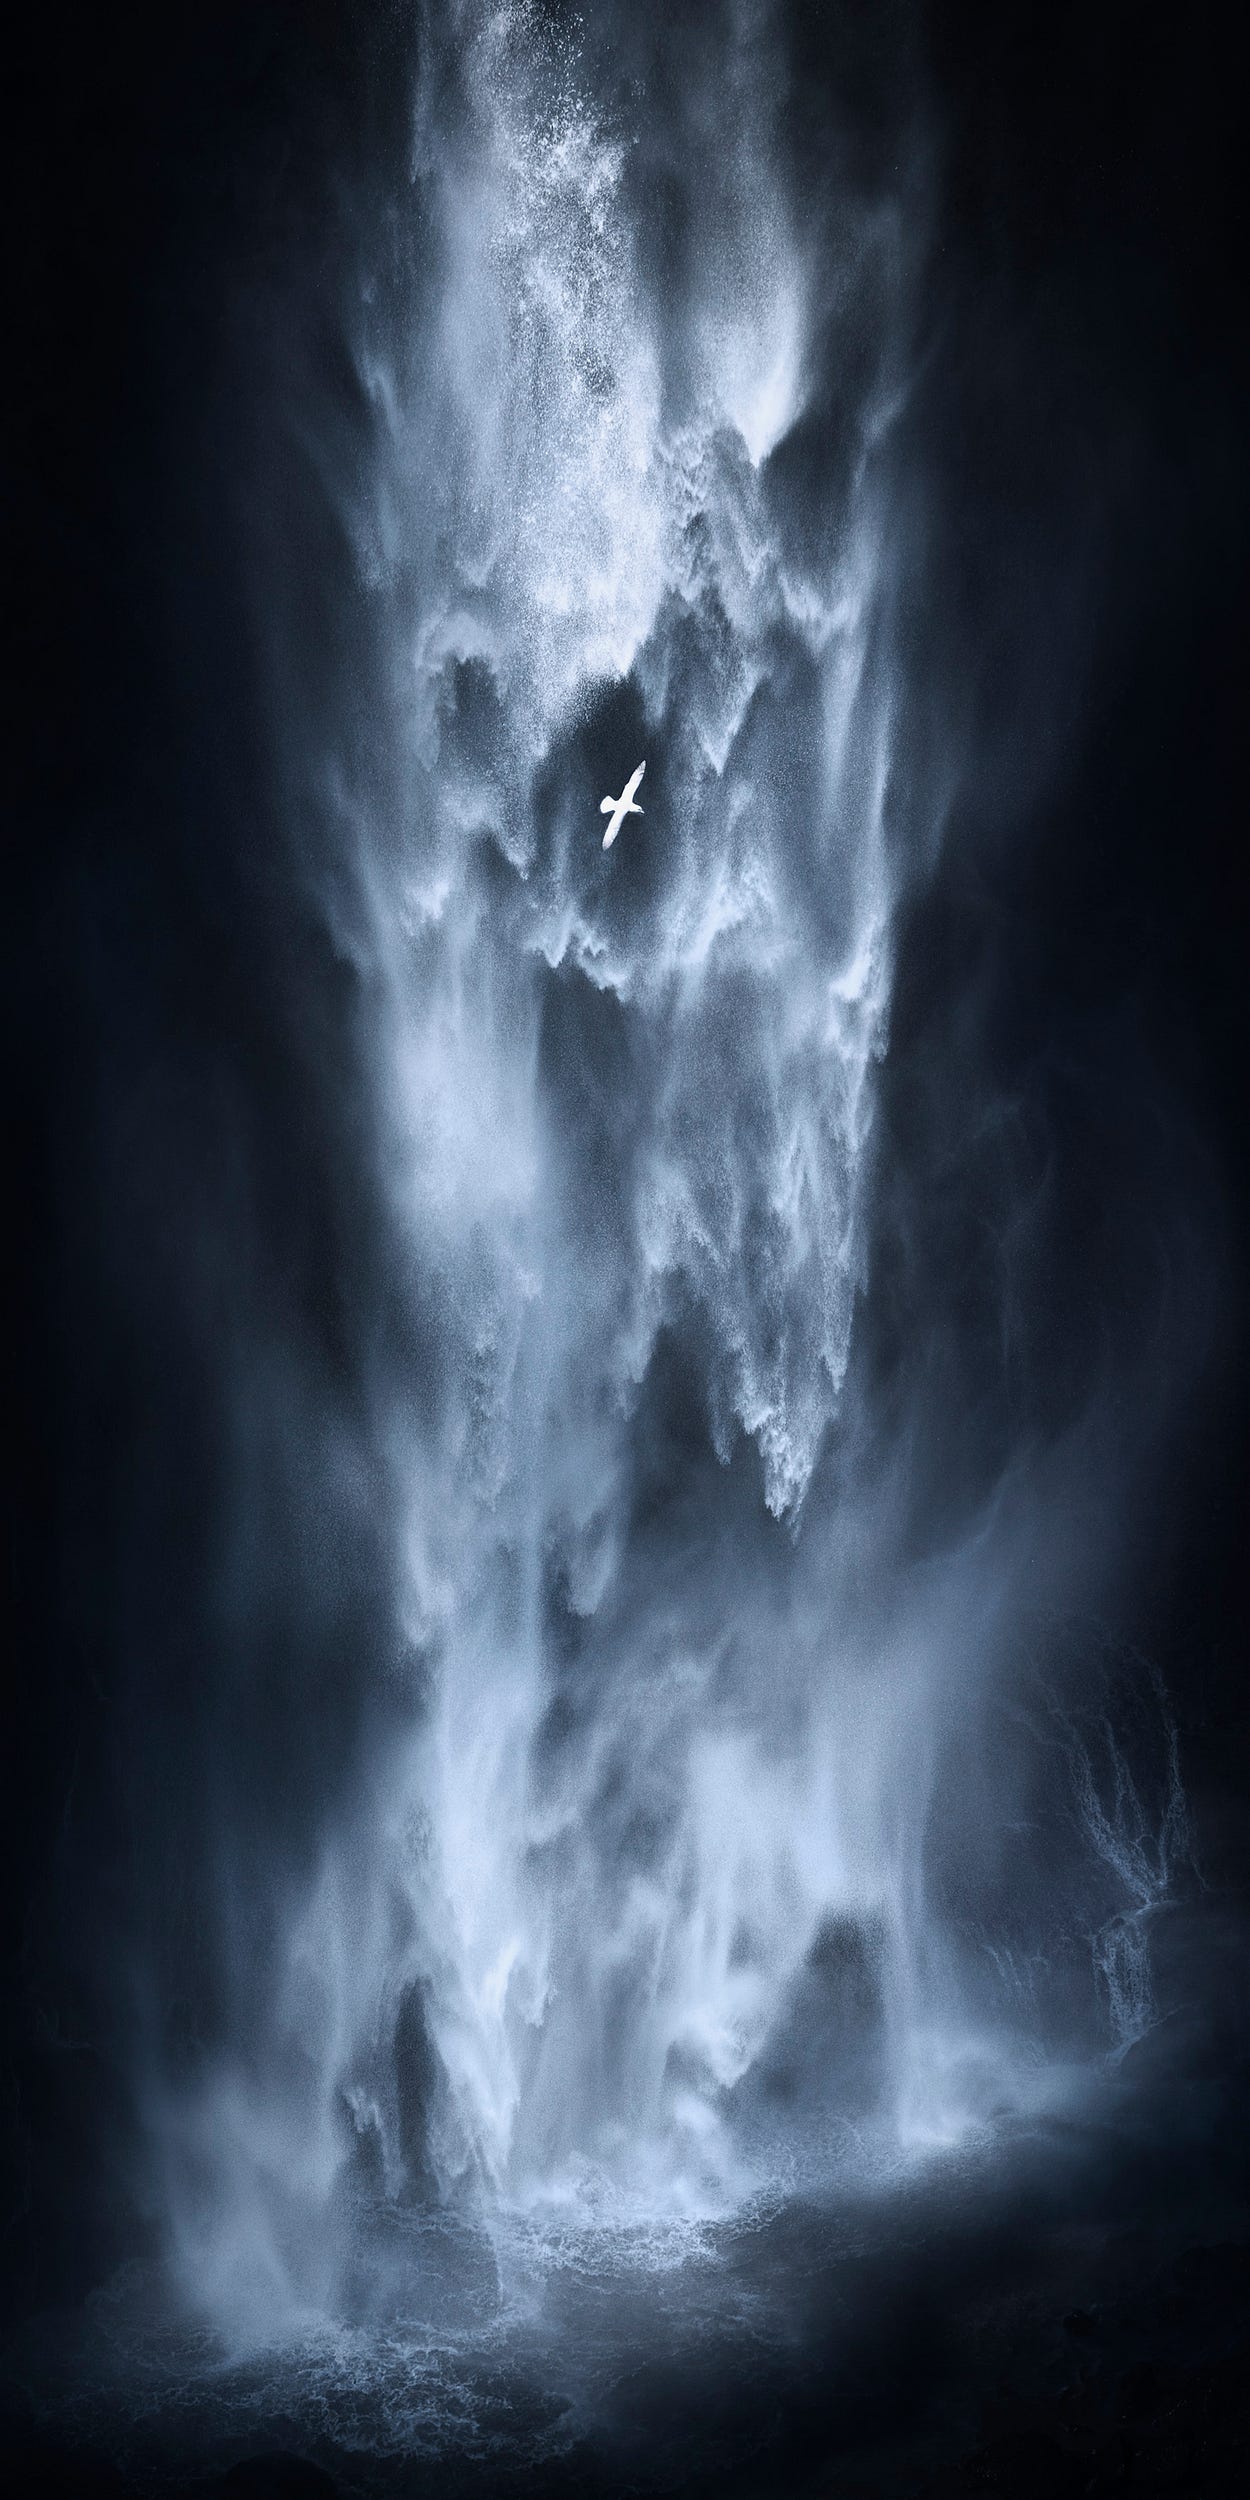 2020 βραβεία πανοραμικής φωτογραφίας, πουλί σε καταρράκτη στη Νότια Ισλανδία, Kai Hornung